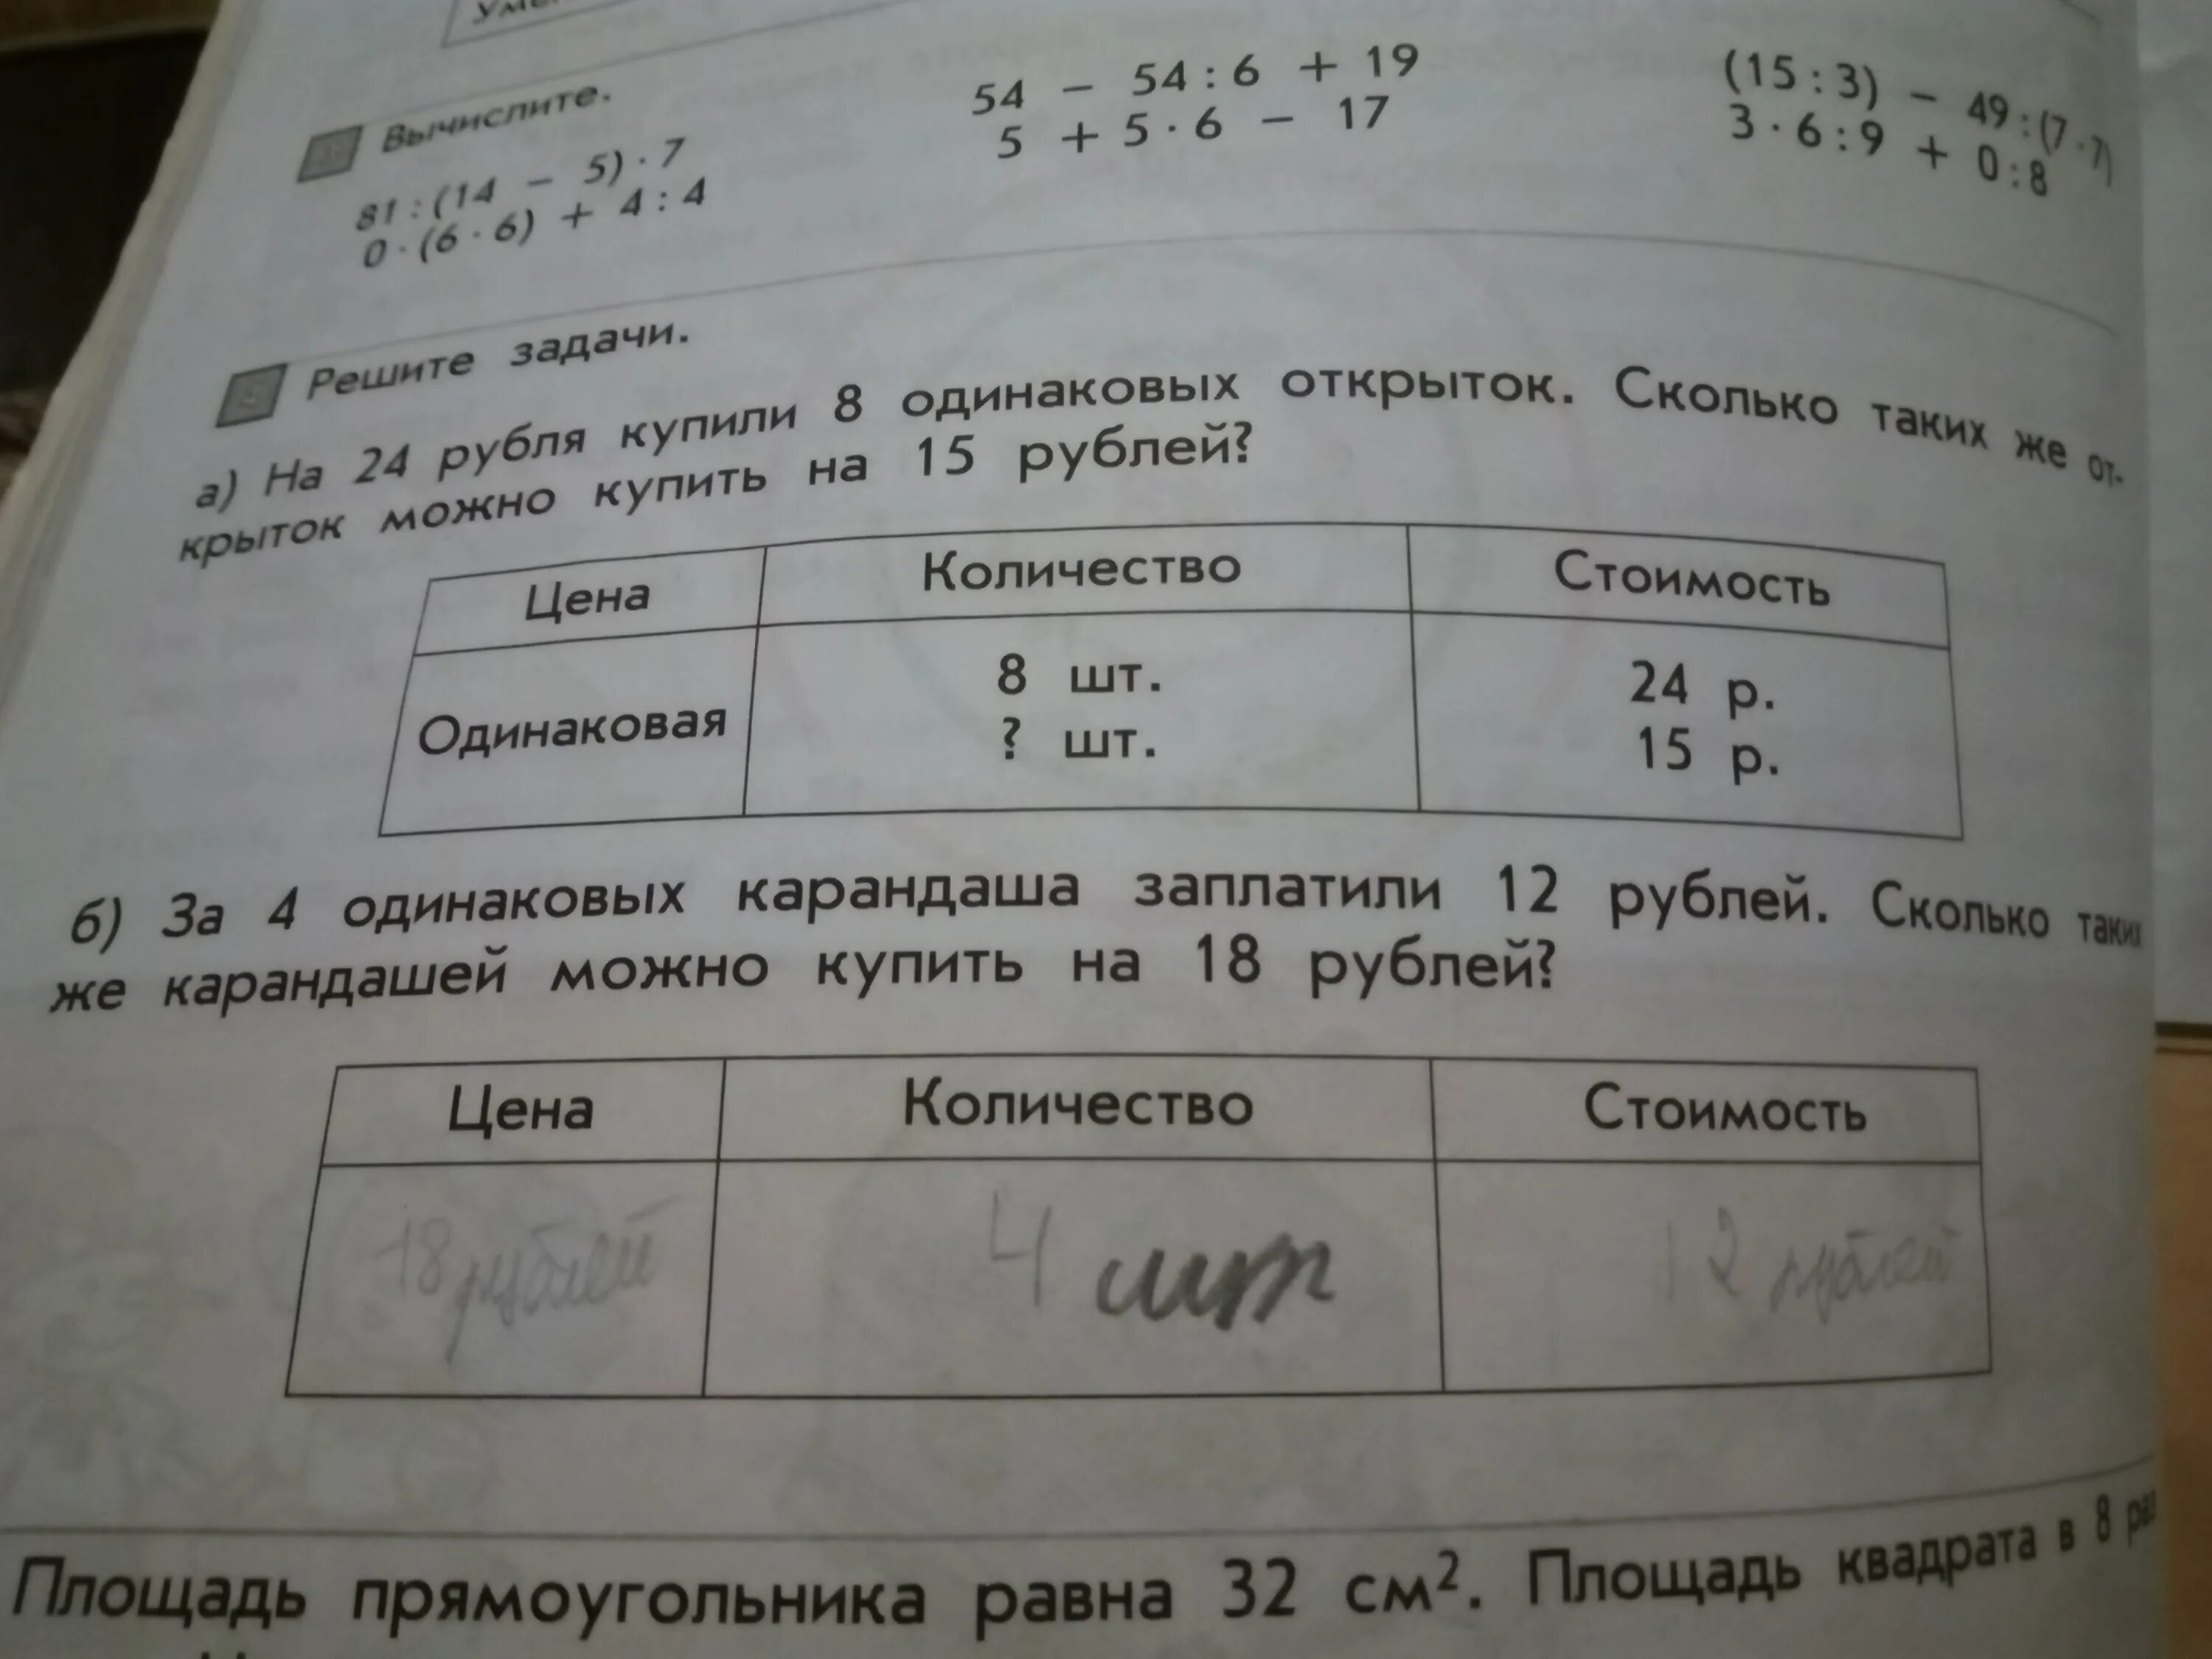 Купили 5 ручек по цене р. Условия задачи 8 карандашей. Соедини условия задач с их вопросами.. Решение задачи 8 карандашей стоят 24 рубля. Задача про рубль.